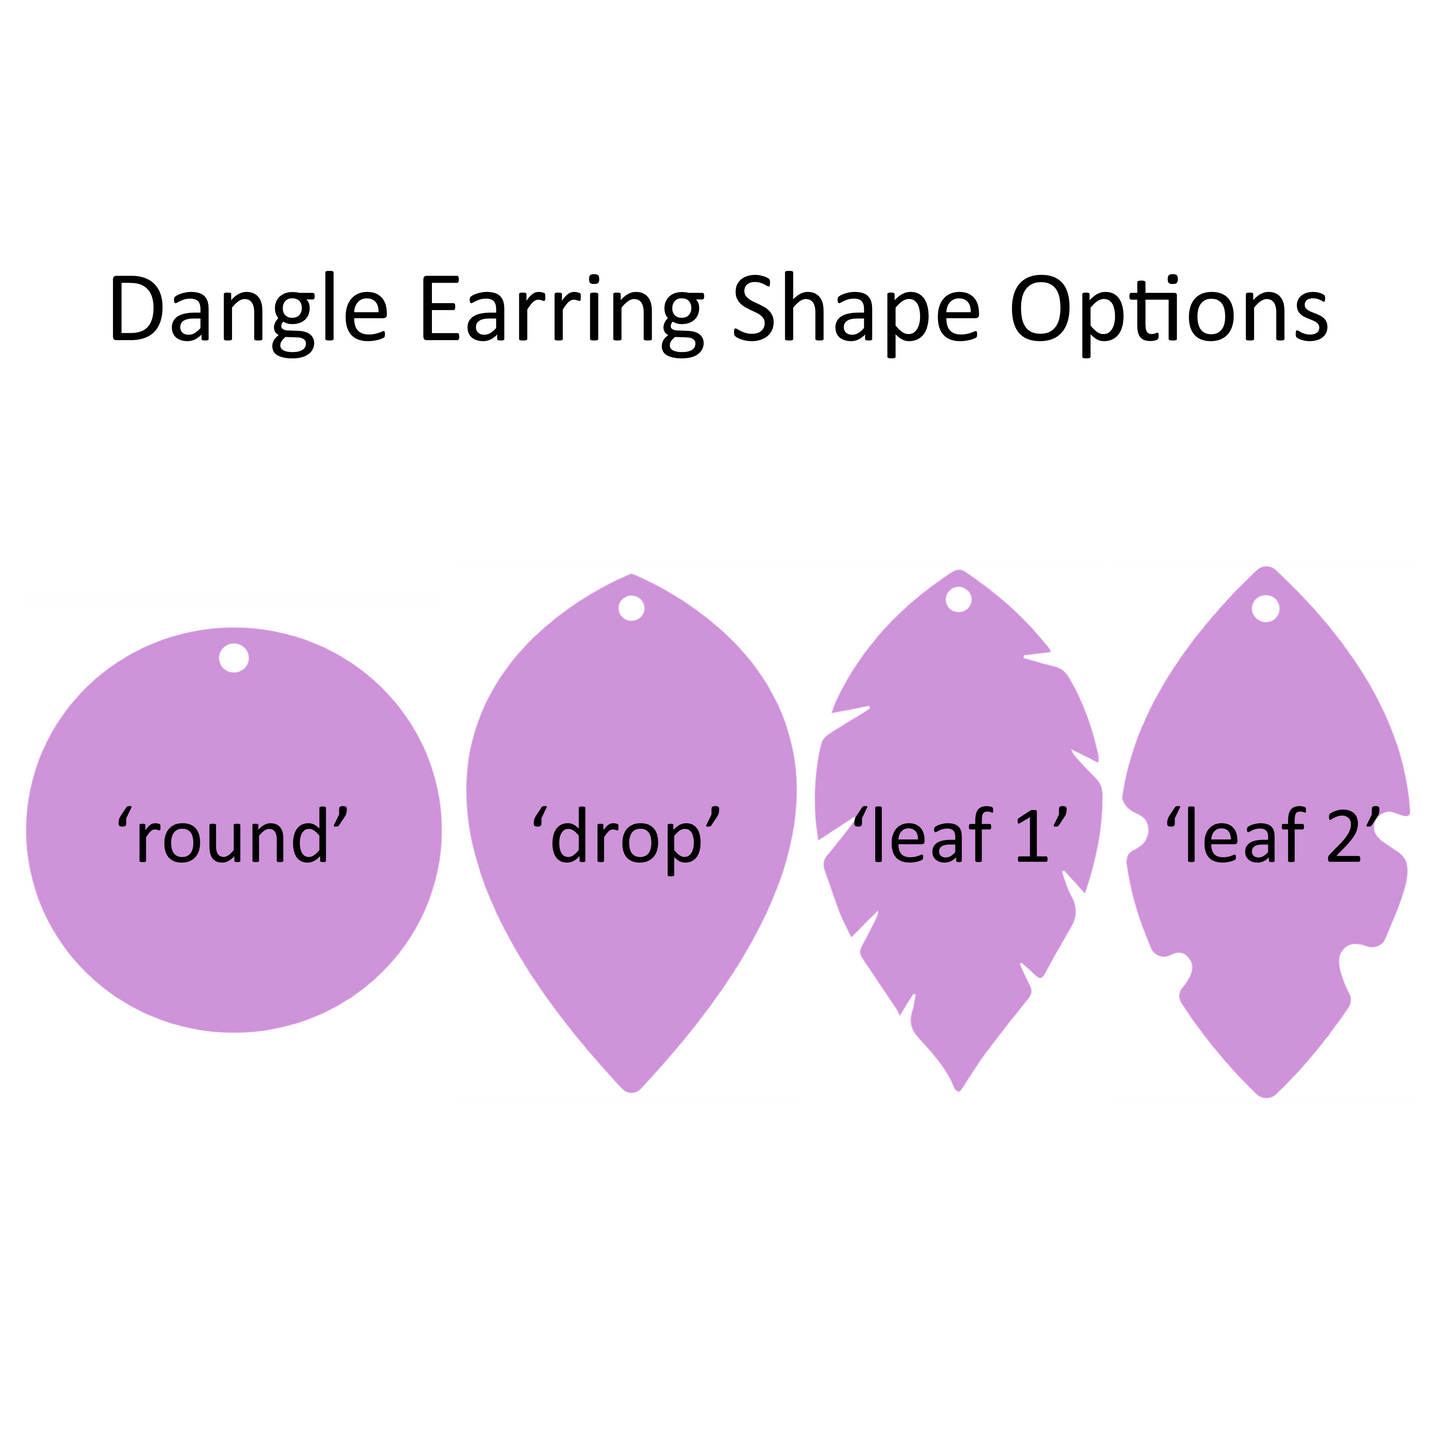 Black Friday ‘Pondering’ Dangle Earrings Aboriginal Design